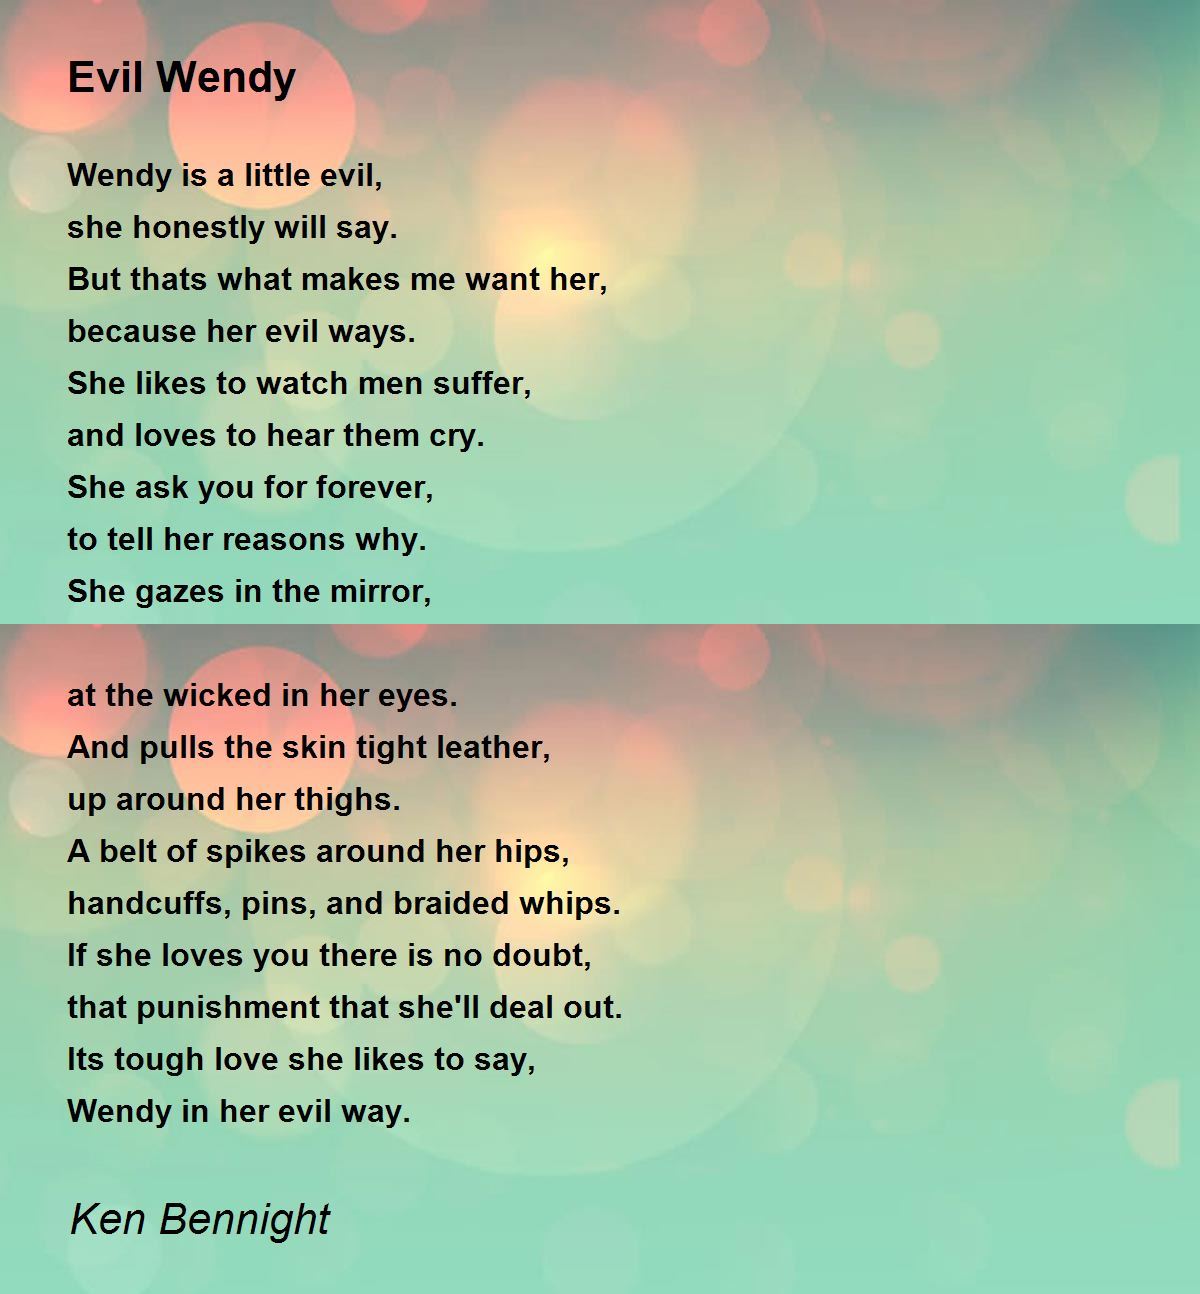 Evil Wendy - Evil Wendy Poem by Saint Cynosure